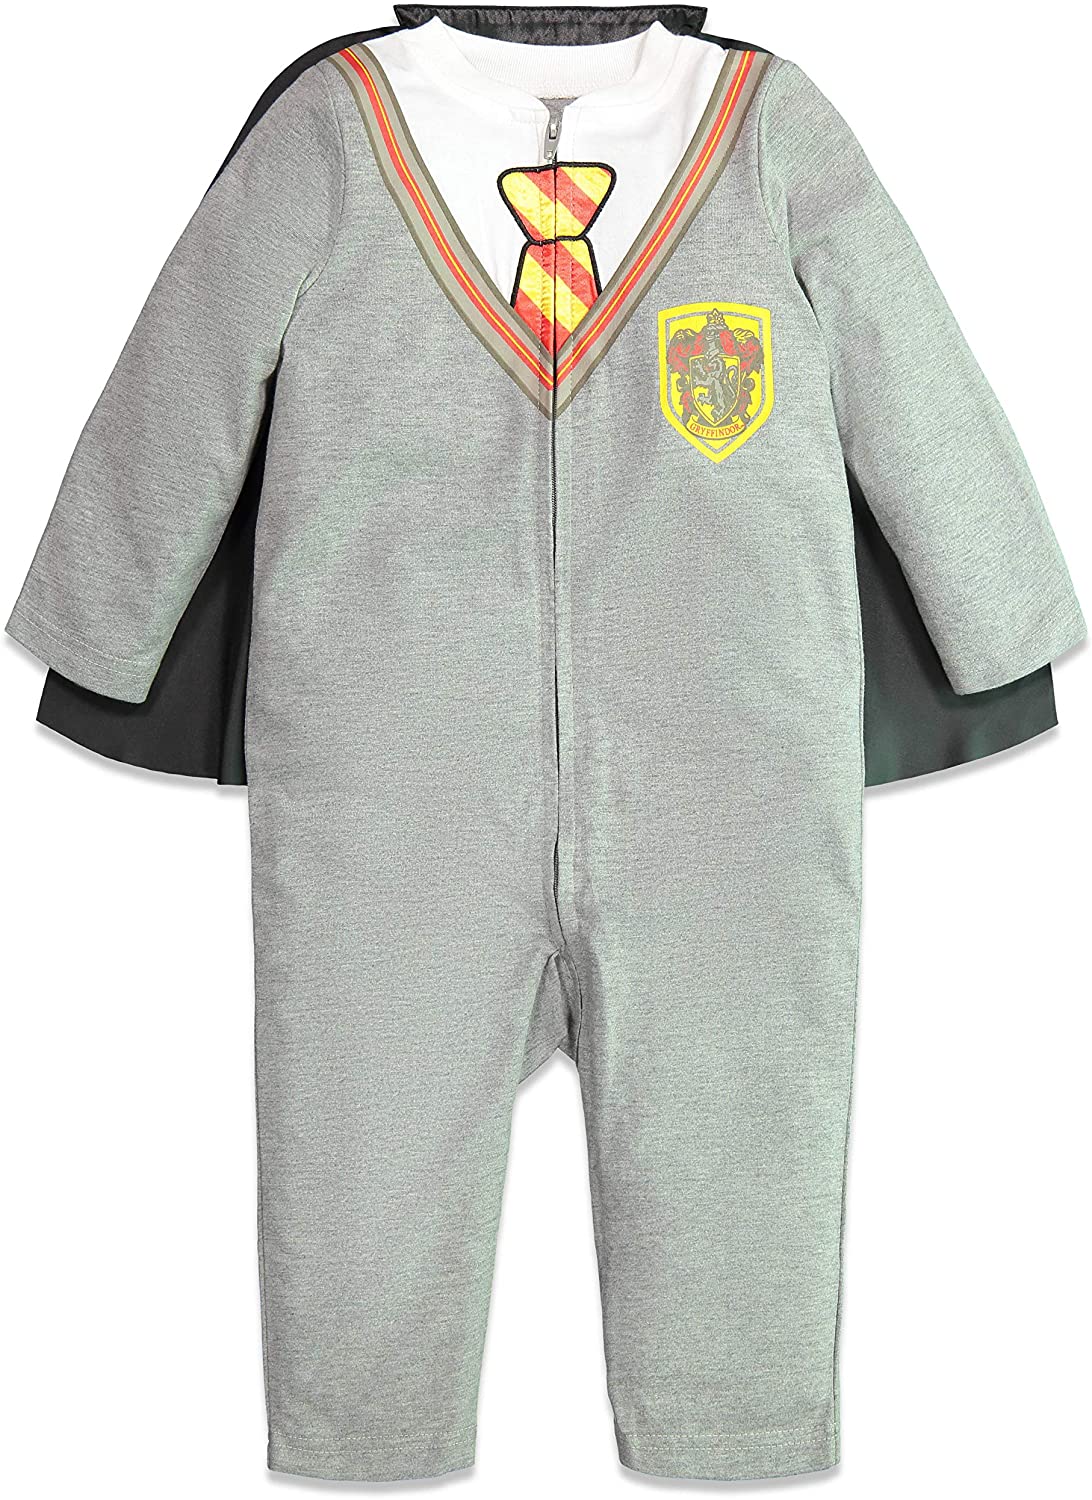 Warner Bros. Harry Potter Newborn Baby Boys Zip-Up Fancy Dress Costume ...